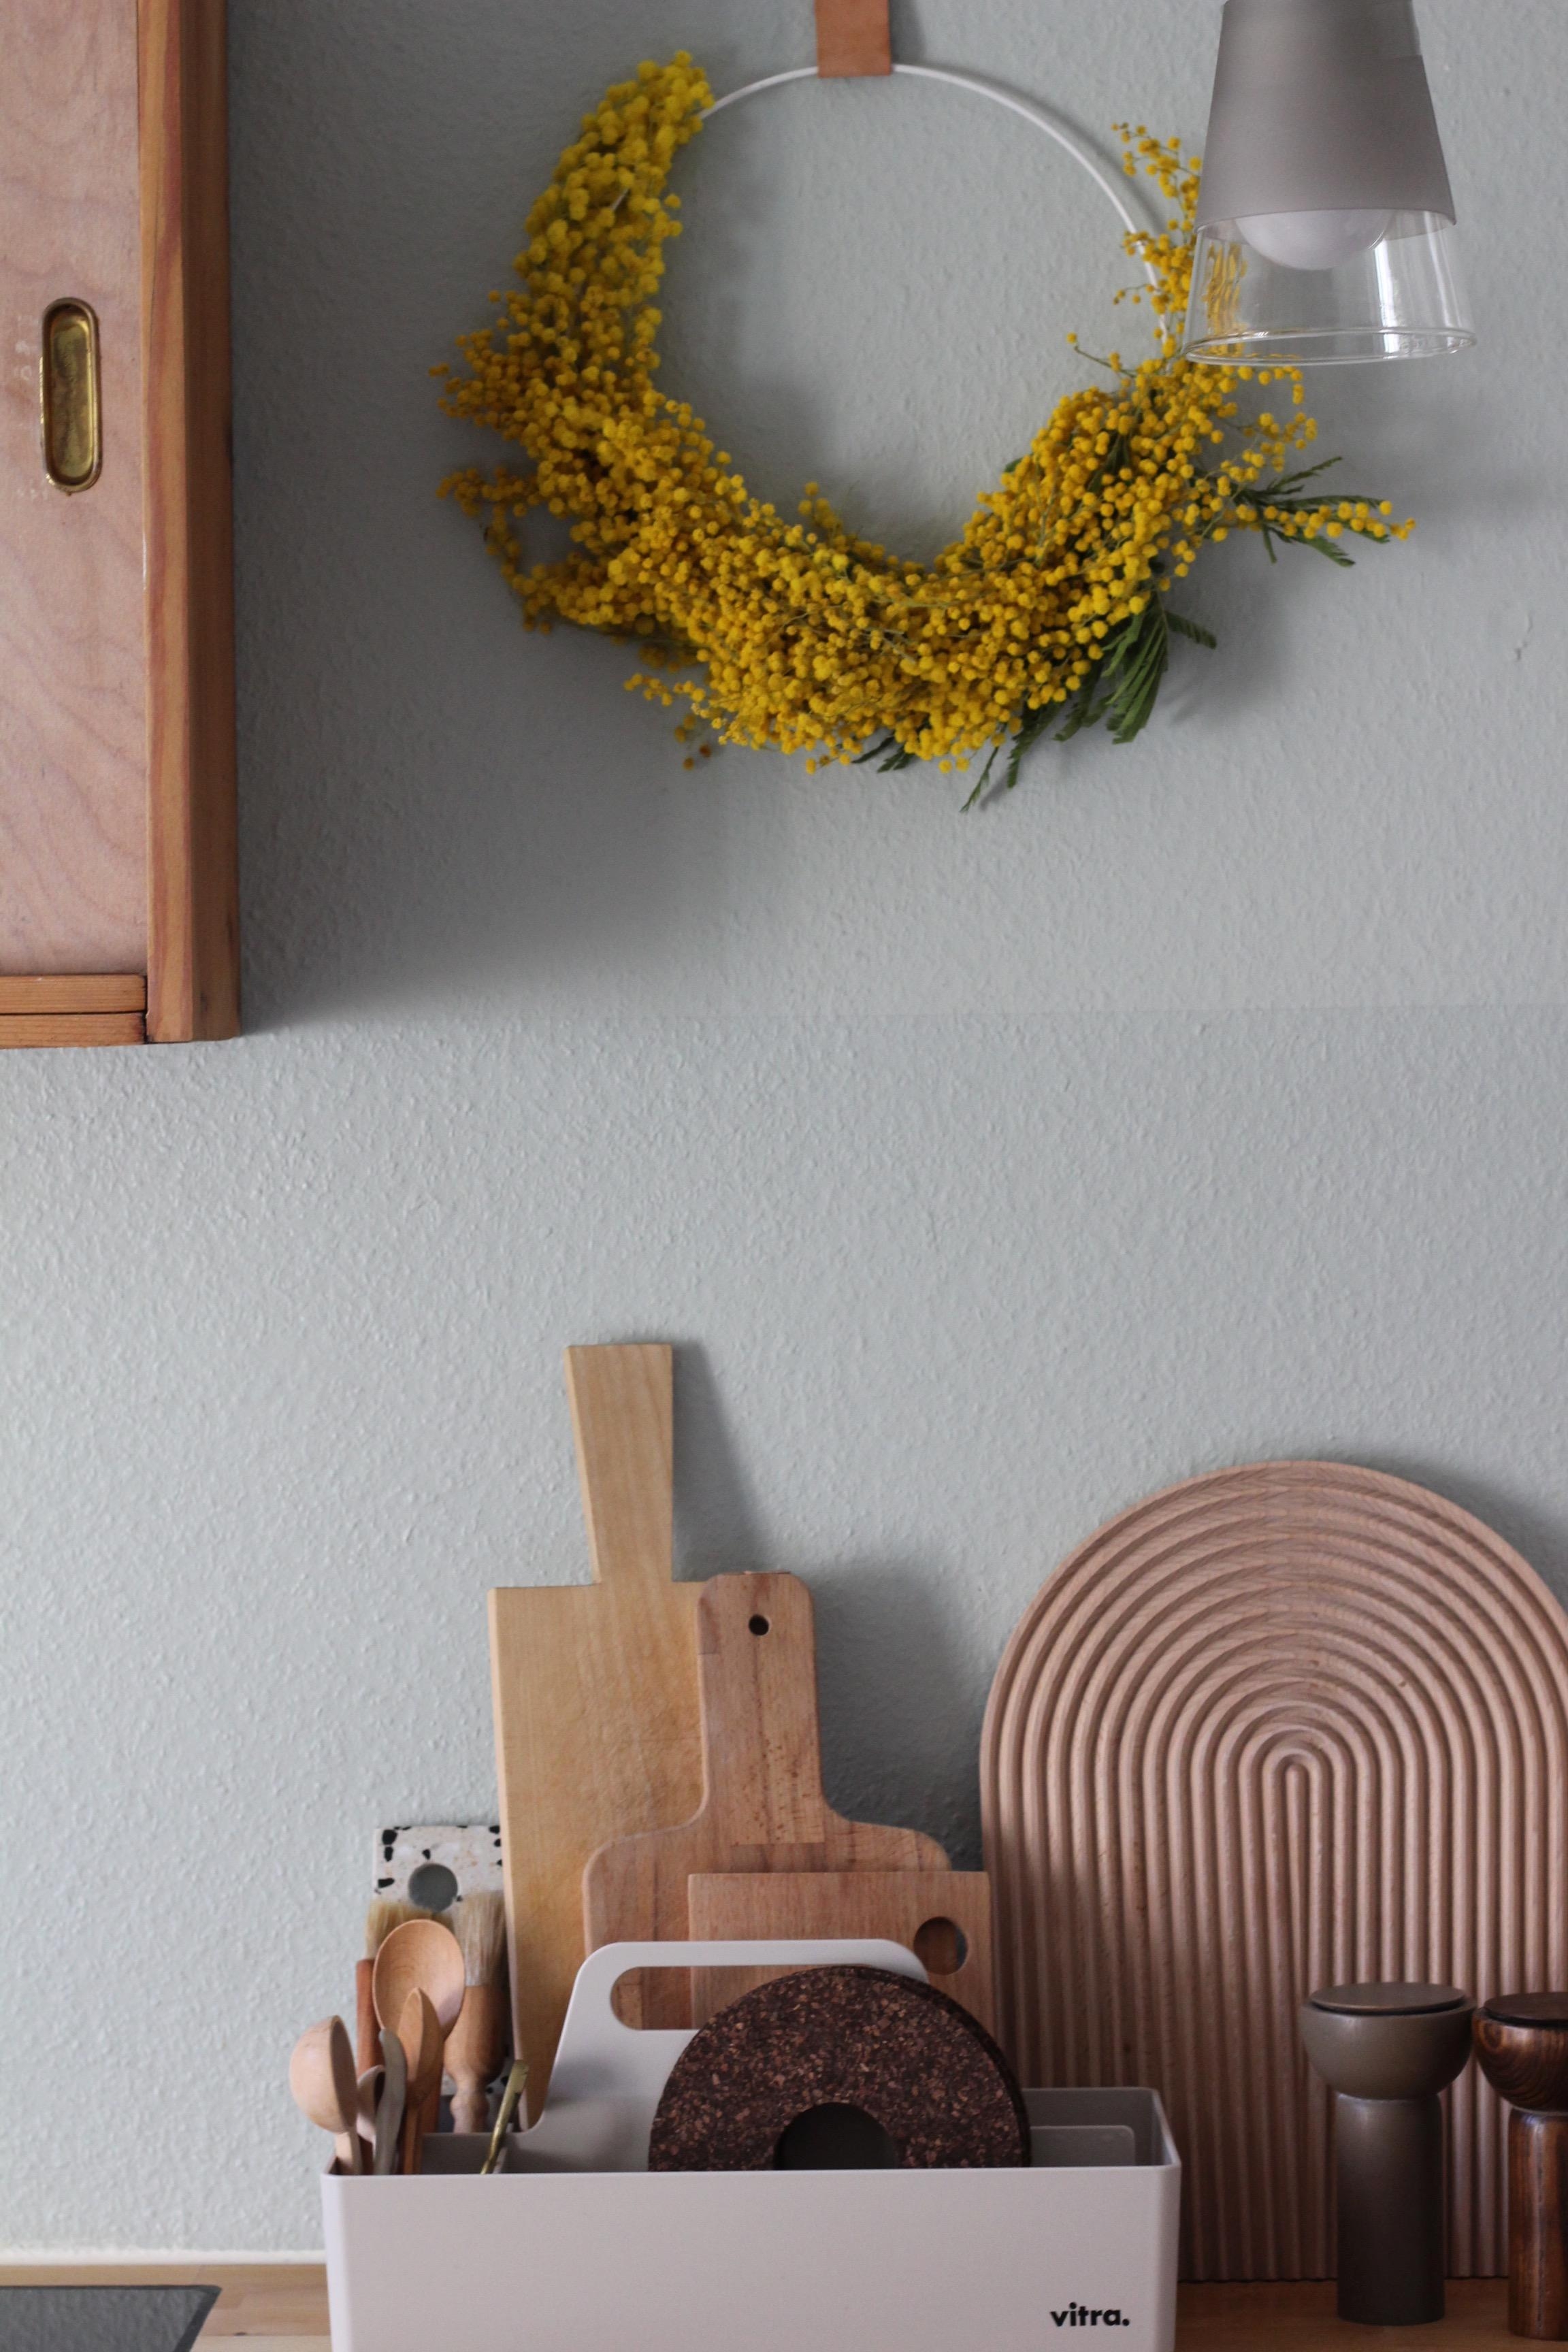 Sonne an die Wand
#mimosenliebe #kitchencorner